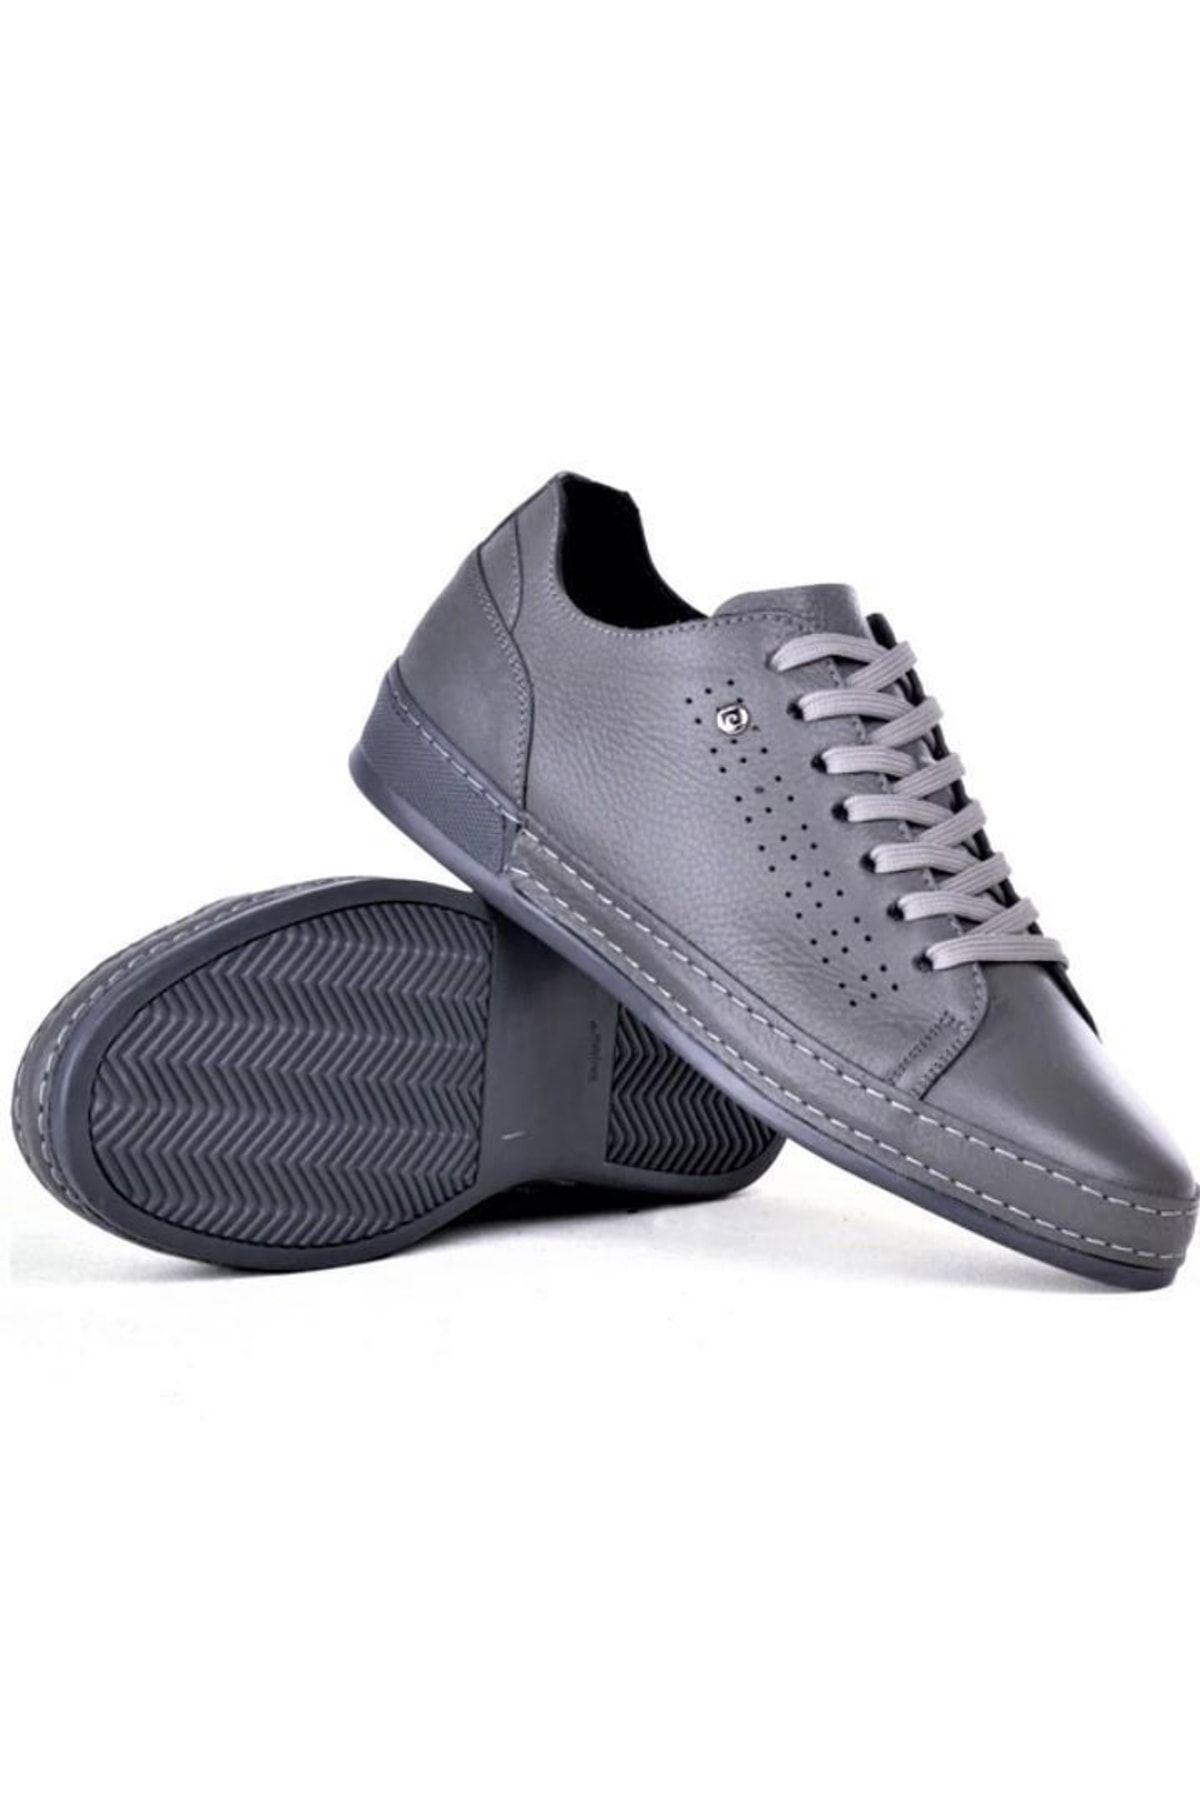 Pierre Cardin Pce41922 Erkek Günlük Hakiki Deri Casual Sneaker Ayakkabı